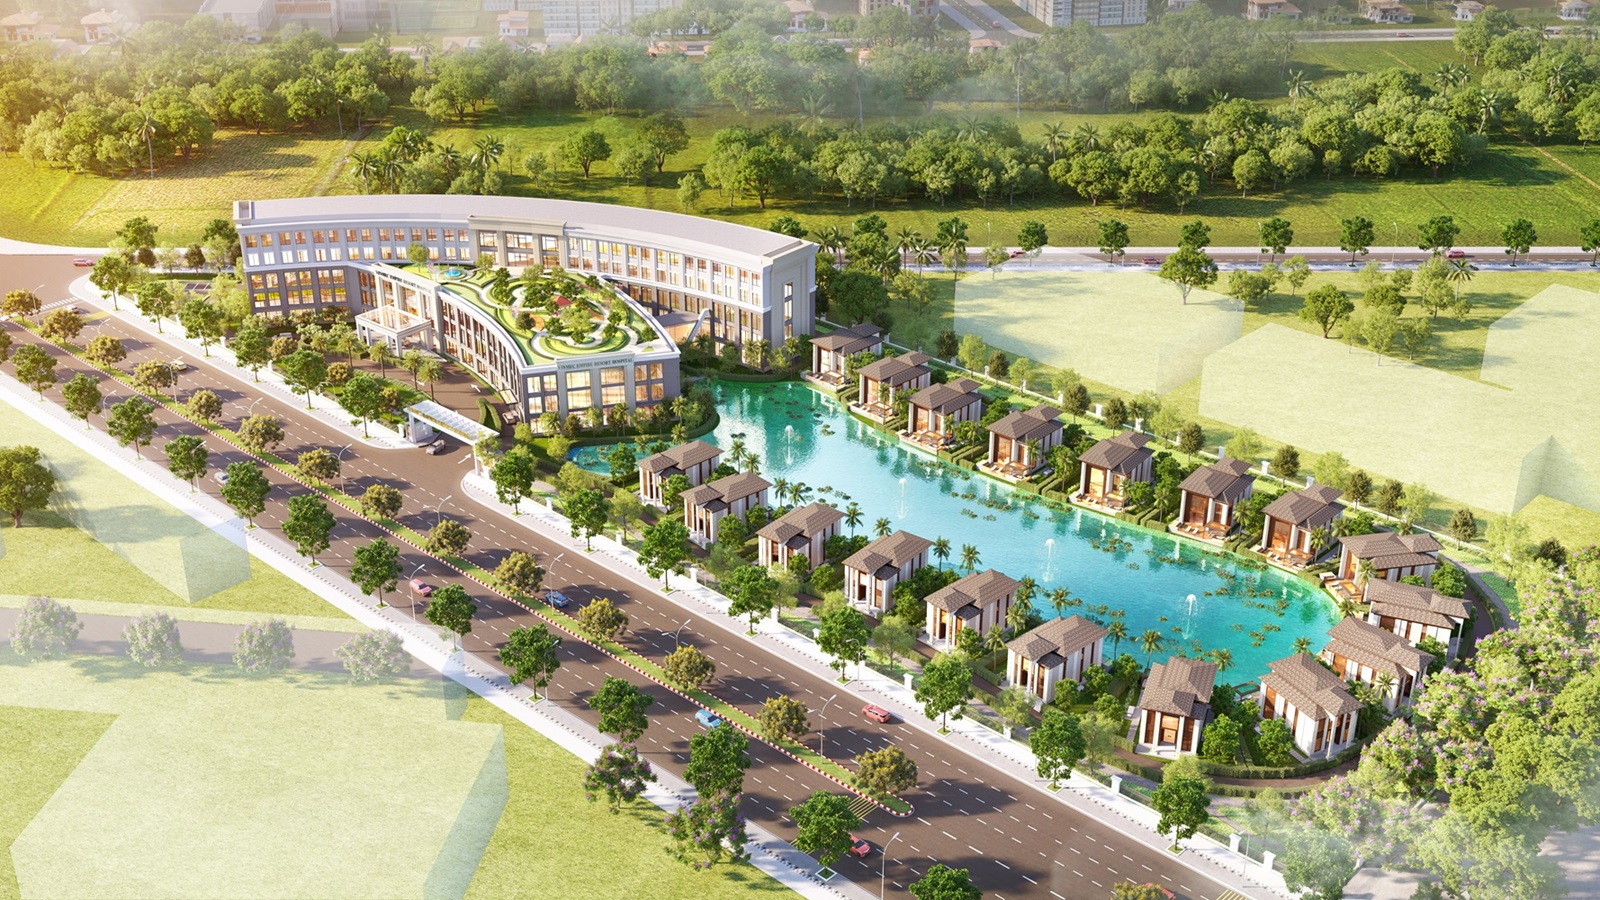 Vinhomes Ocean Park 2 cũng sở hữu bệnh viện theo mô hình resort cao cấp dự kiến đi vào hoạt động trong năm 2025. Ảnh: Ngọc Quỳnh